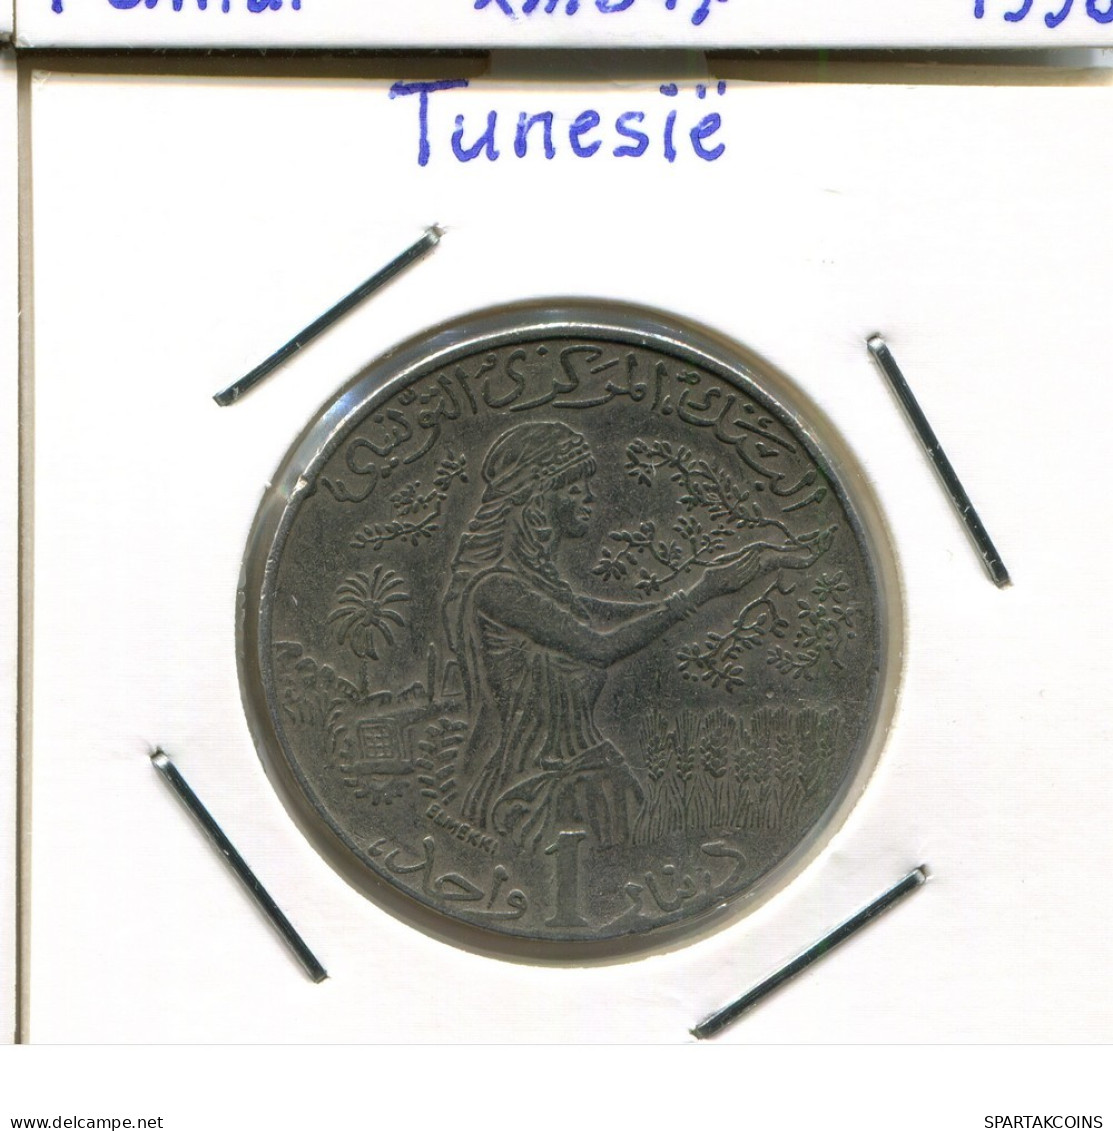 1 DINAR 1997 TÚNEZ TUNISIA Moneda #AP847.2.E.A - Tunisia